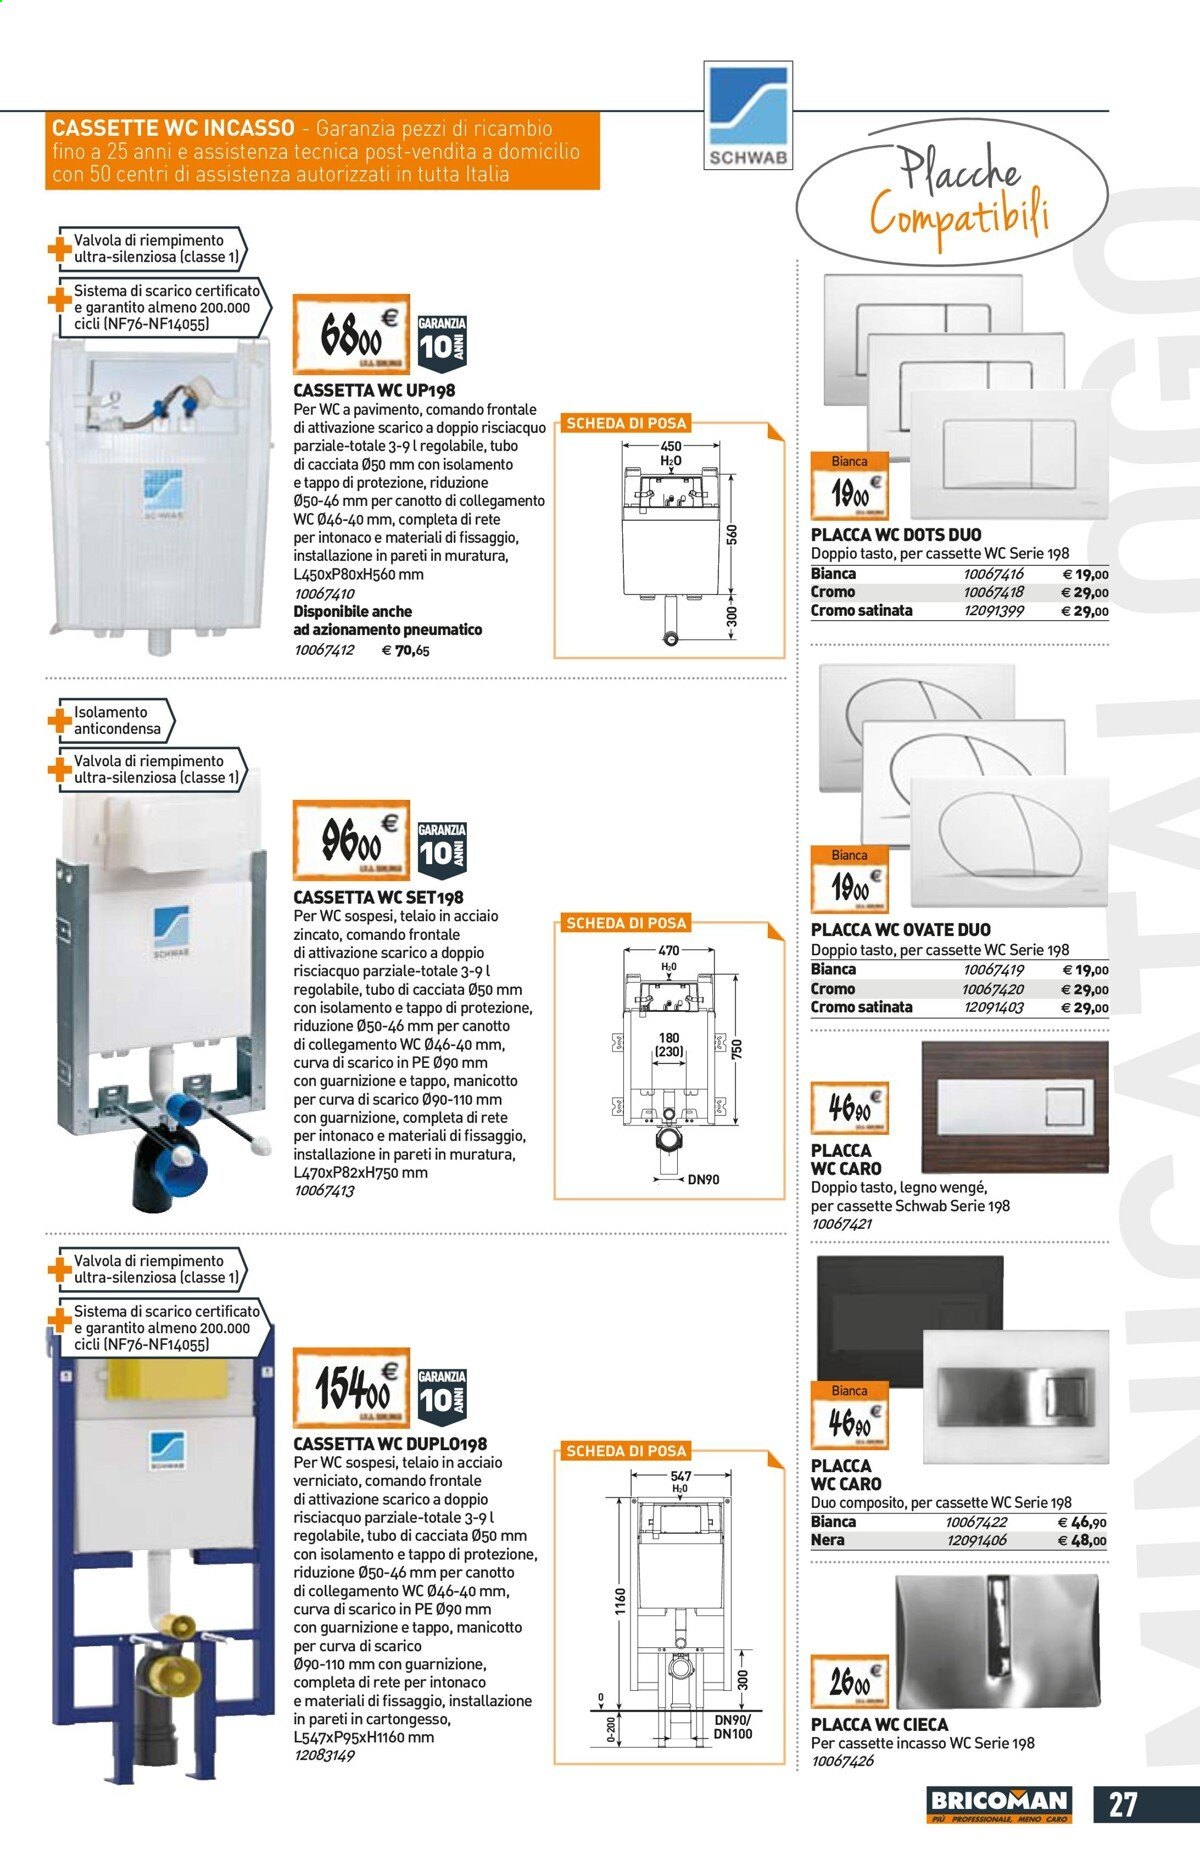 thumbnail - Volantino Tecnomat by Bricoman - 24/6/2021 - 28/7/2021 - Prodotti in offerta - cassetta WC, placca WC, guarnizione, pavimento, pneumatici. Pagina 27.